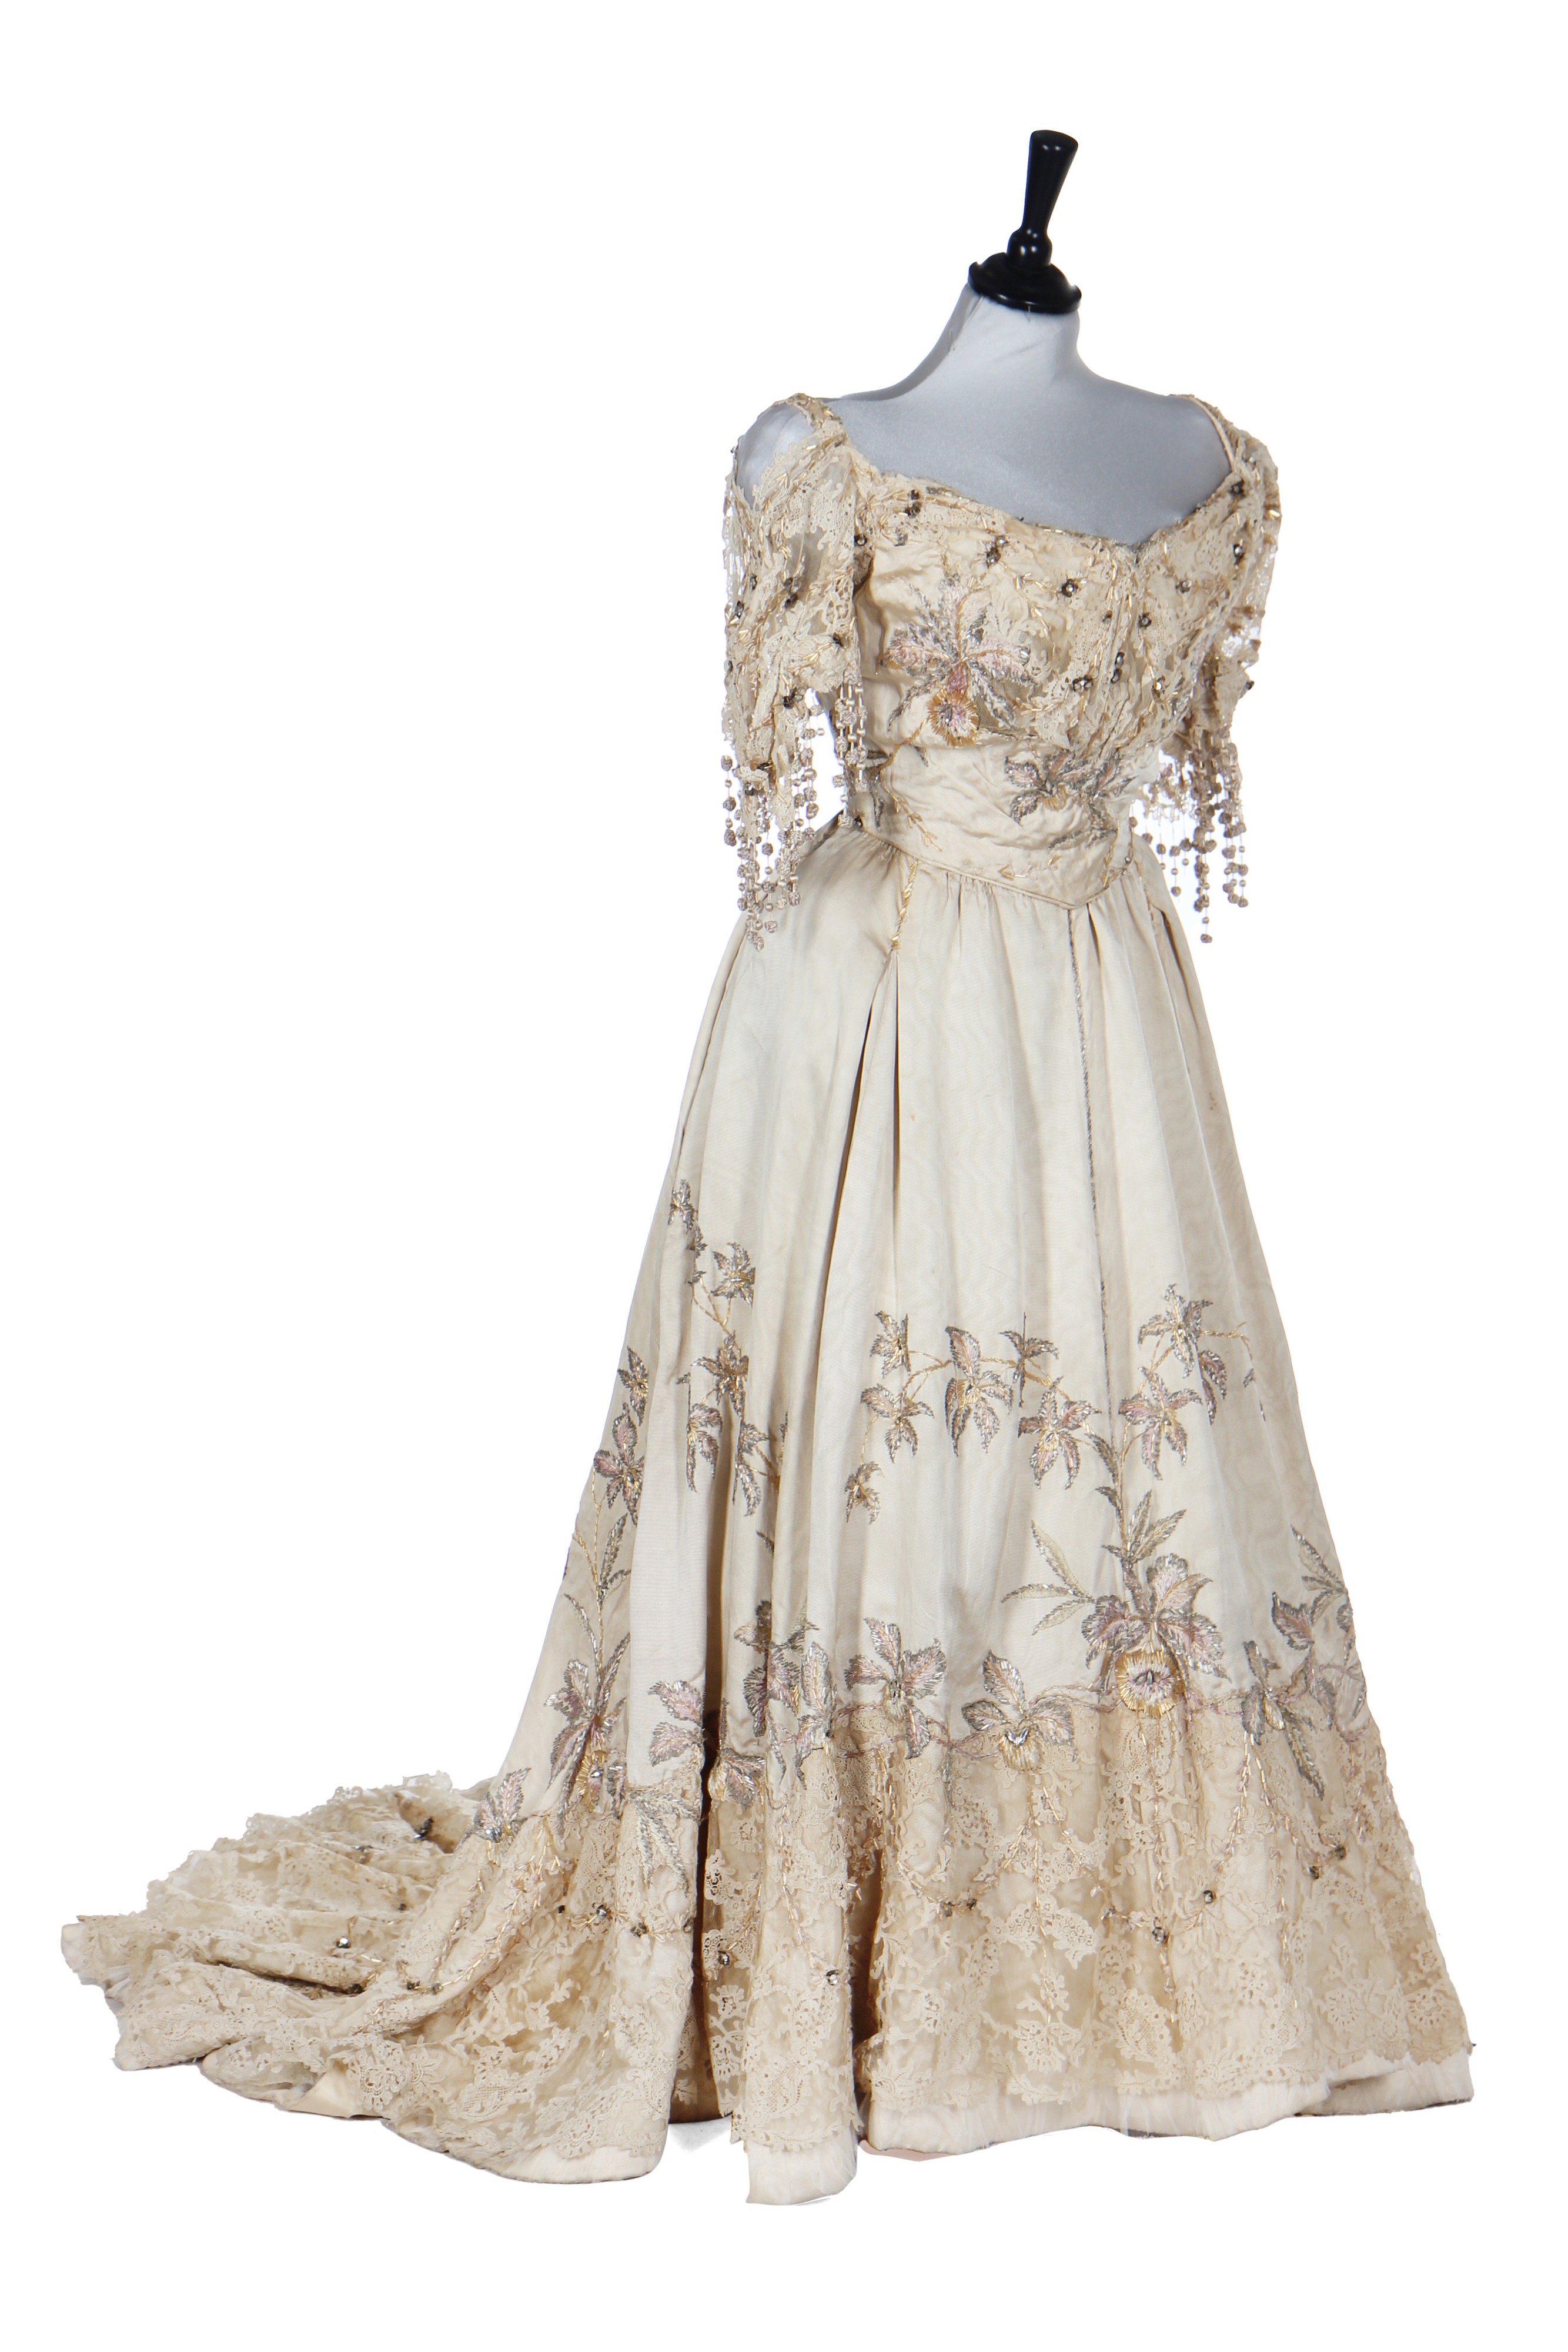 Lot 356 - A Redfern ball gown, 1898-1900